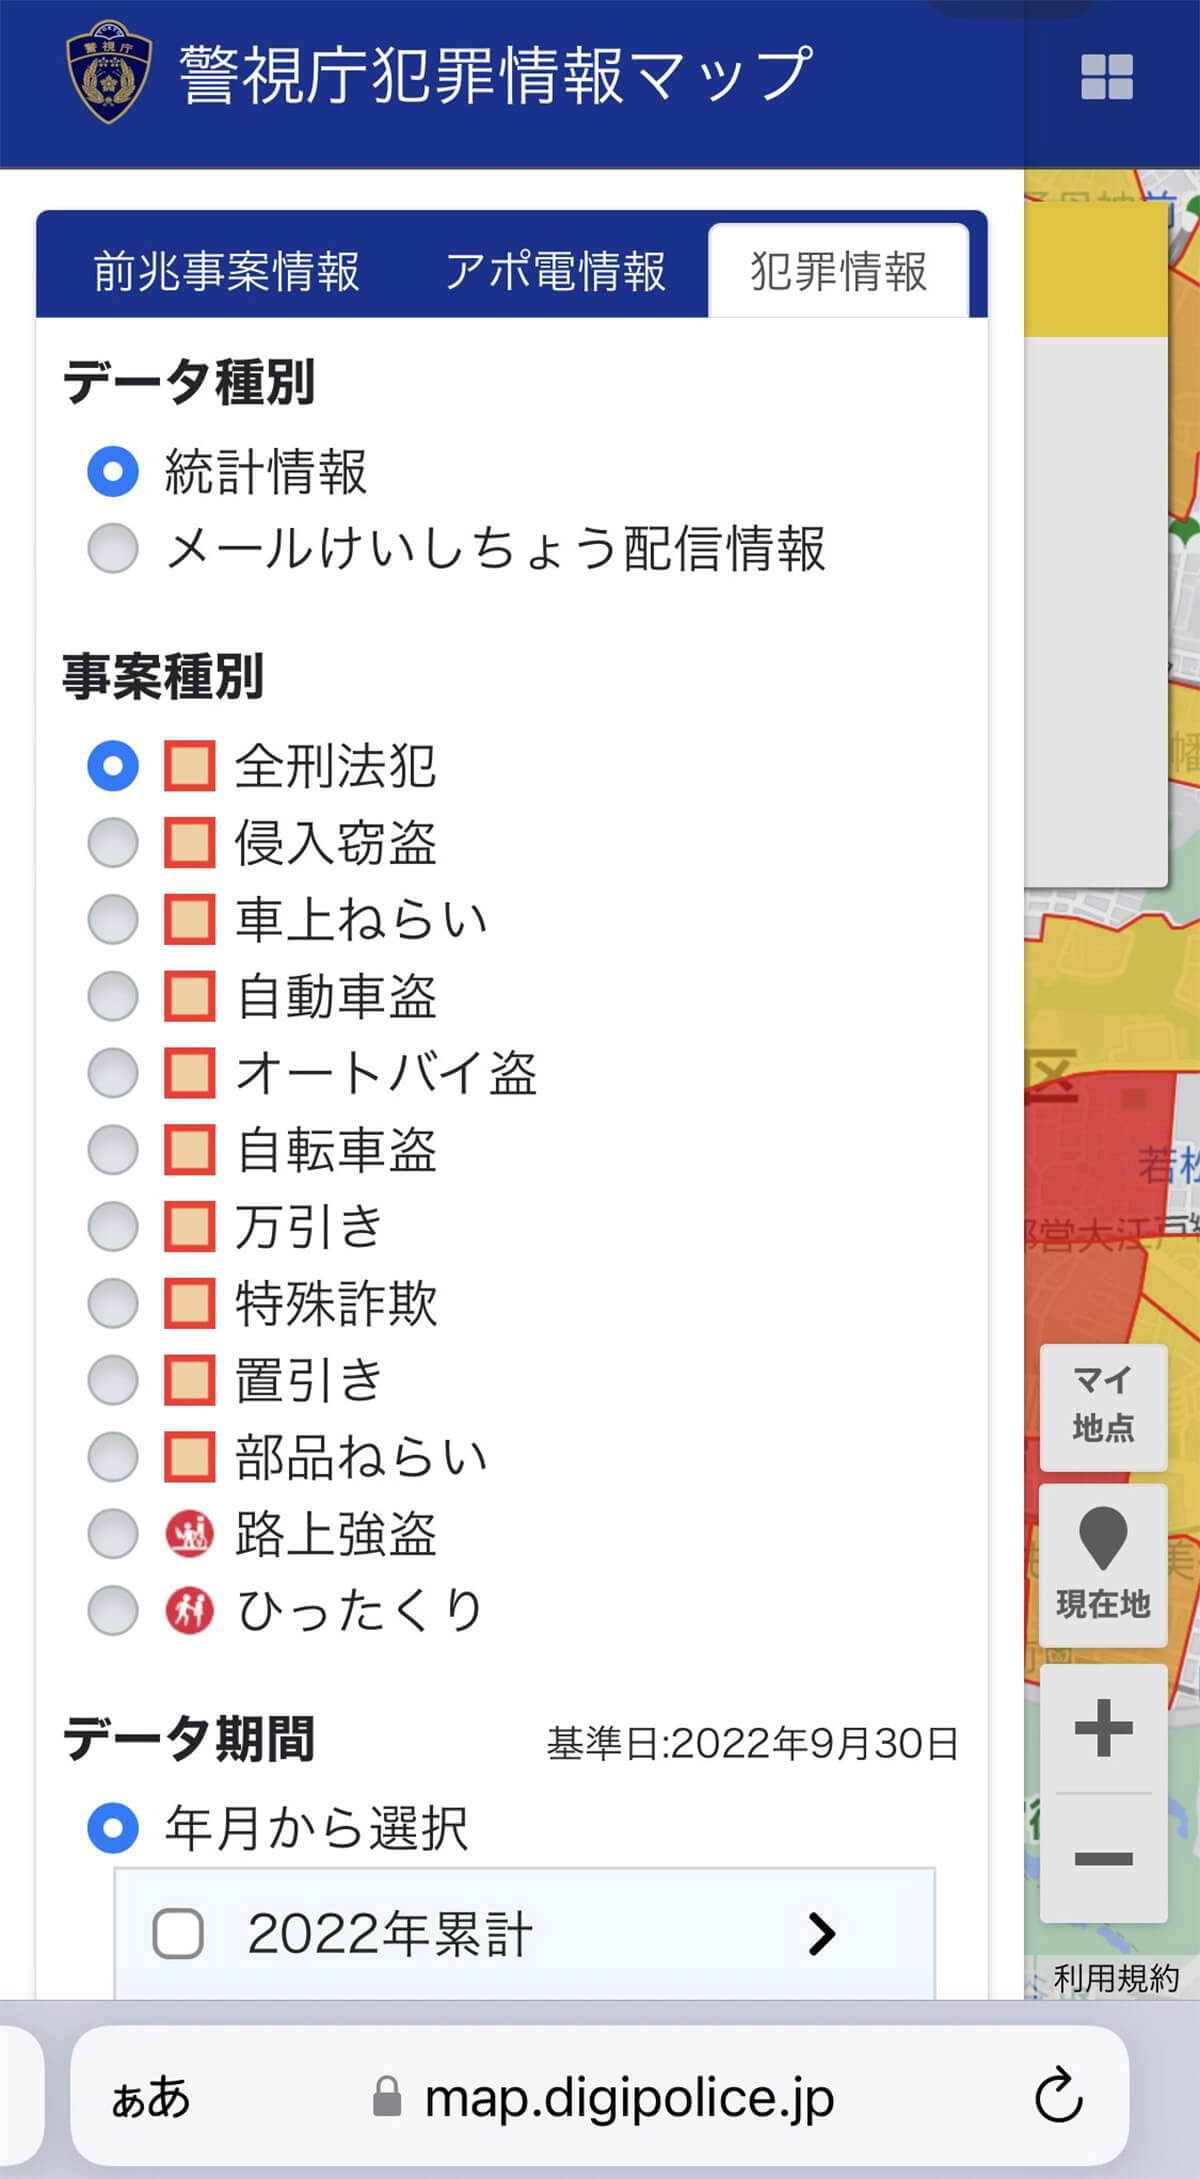 警視庁犯罪情報マップ「犯罪情報」